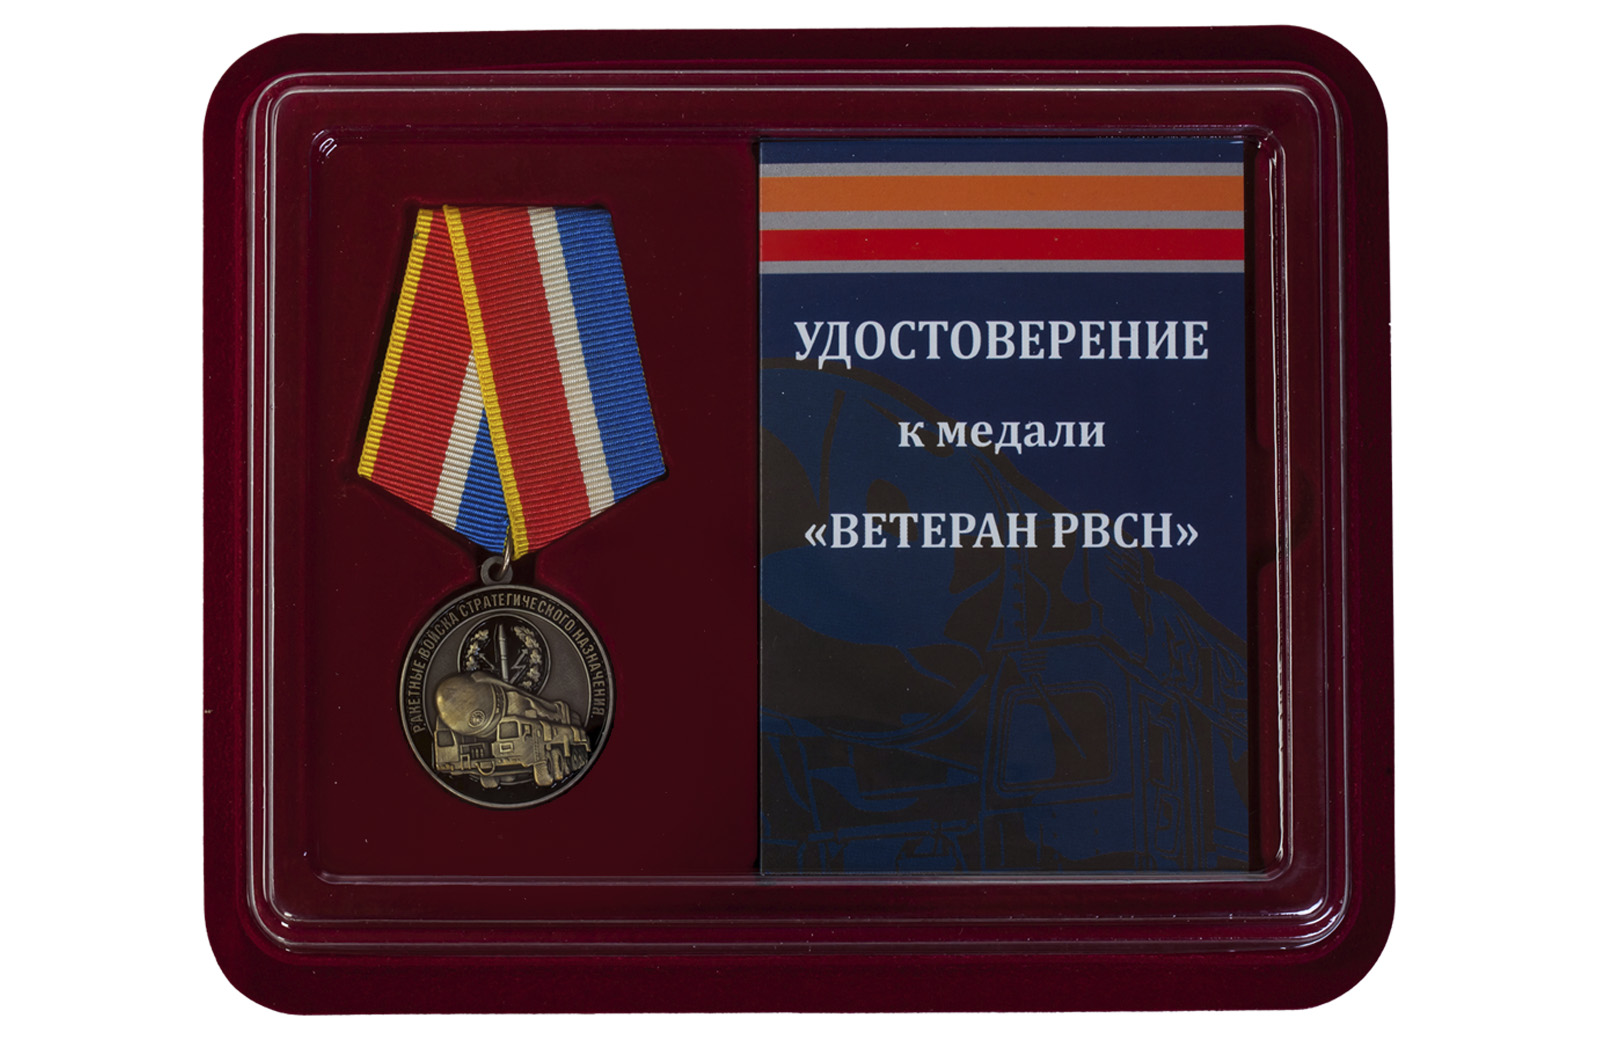 Купить медаль Ветеран РВСН в футляре с удостоверением в подарок